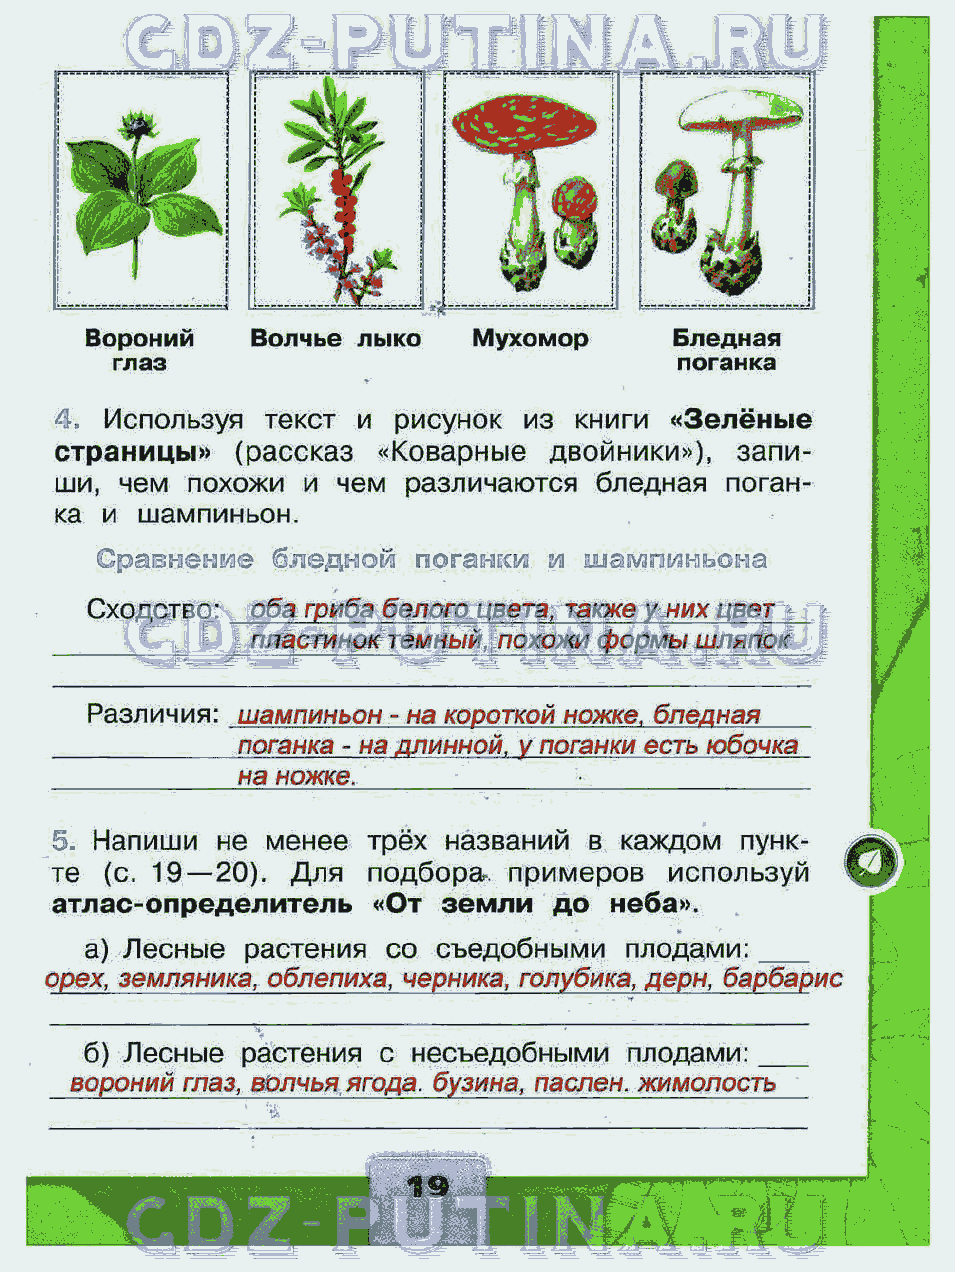 Книга зеленые страницы текст коварные двойники